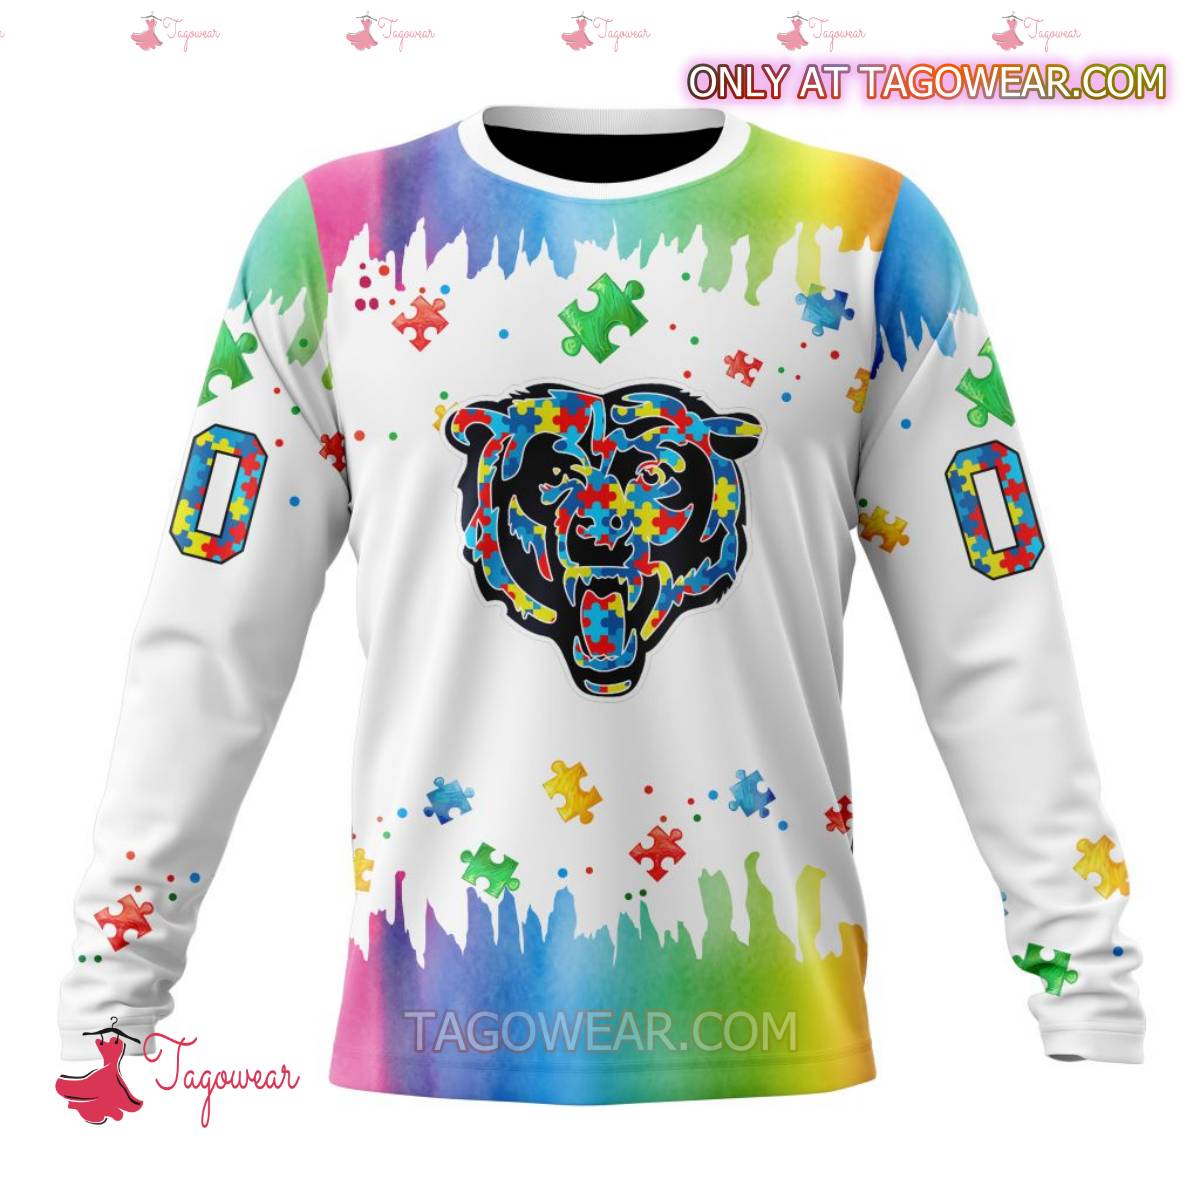 NFL Chicago Bears Autism Awareness Rainbow Splash Personalized T-shirt, Hoodie b